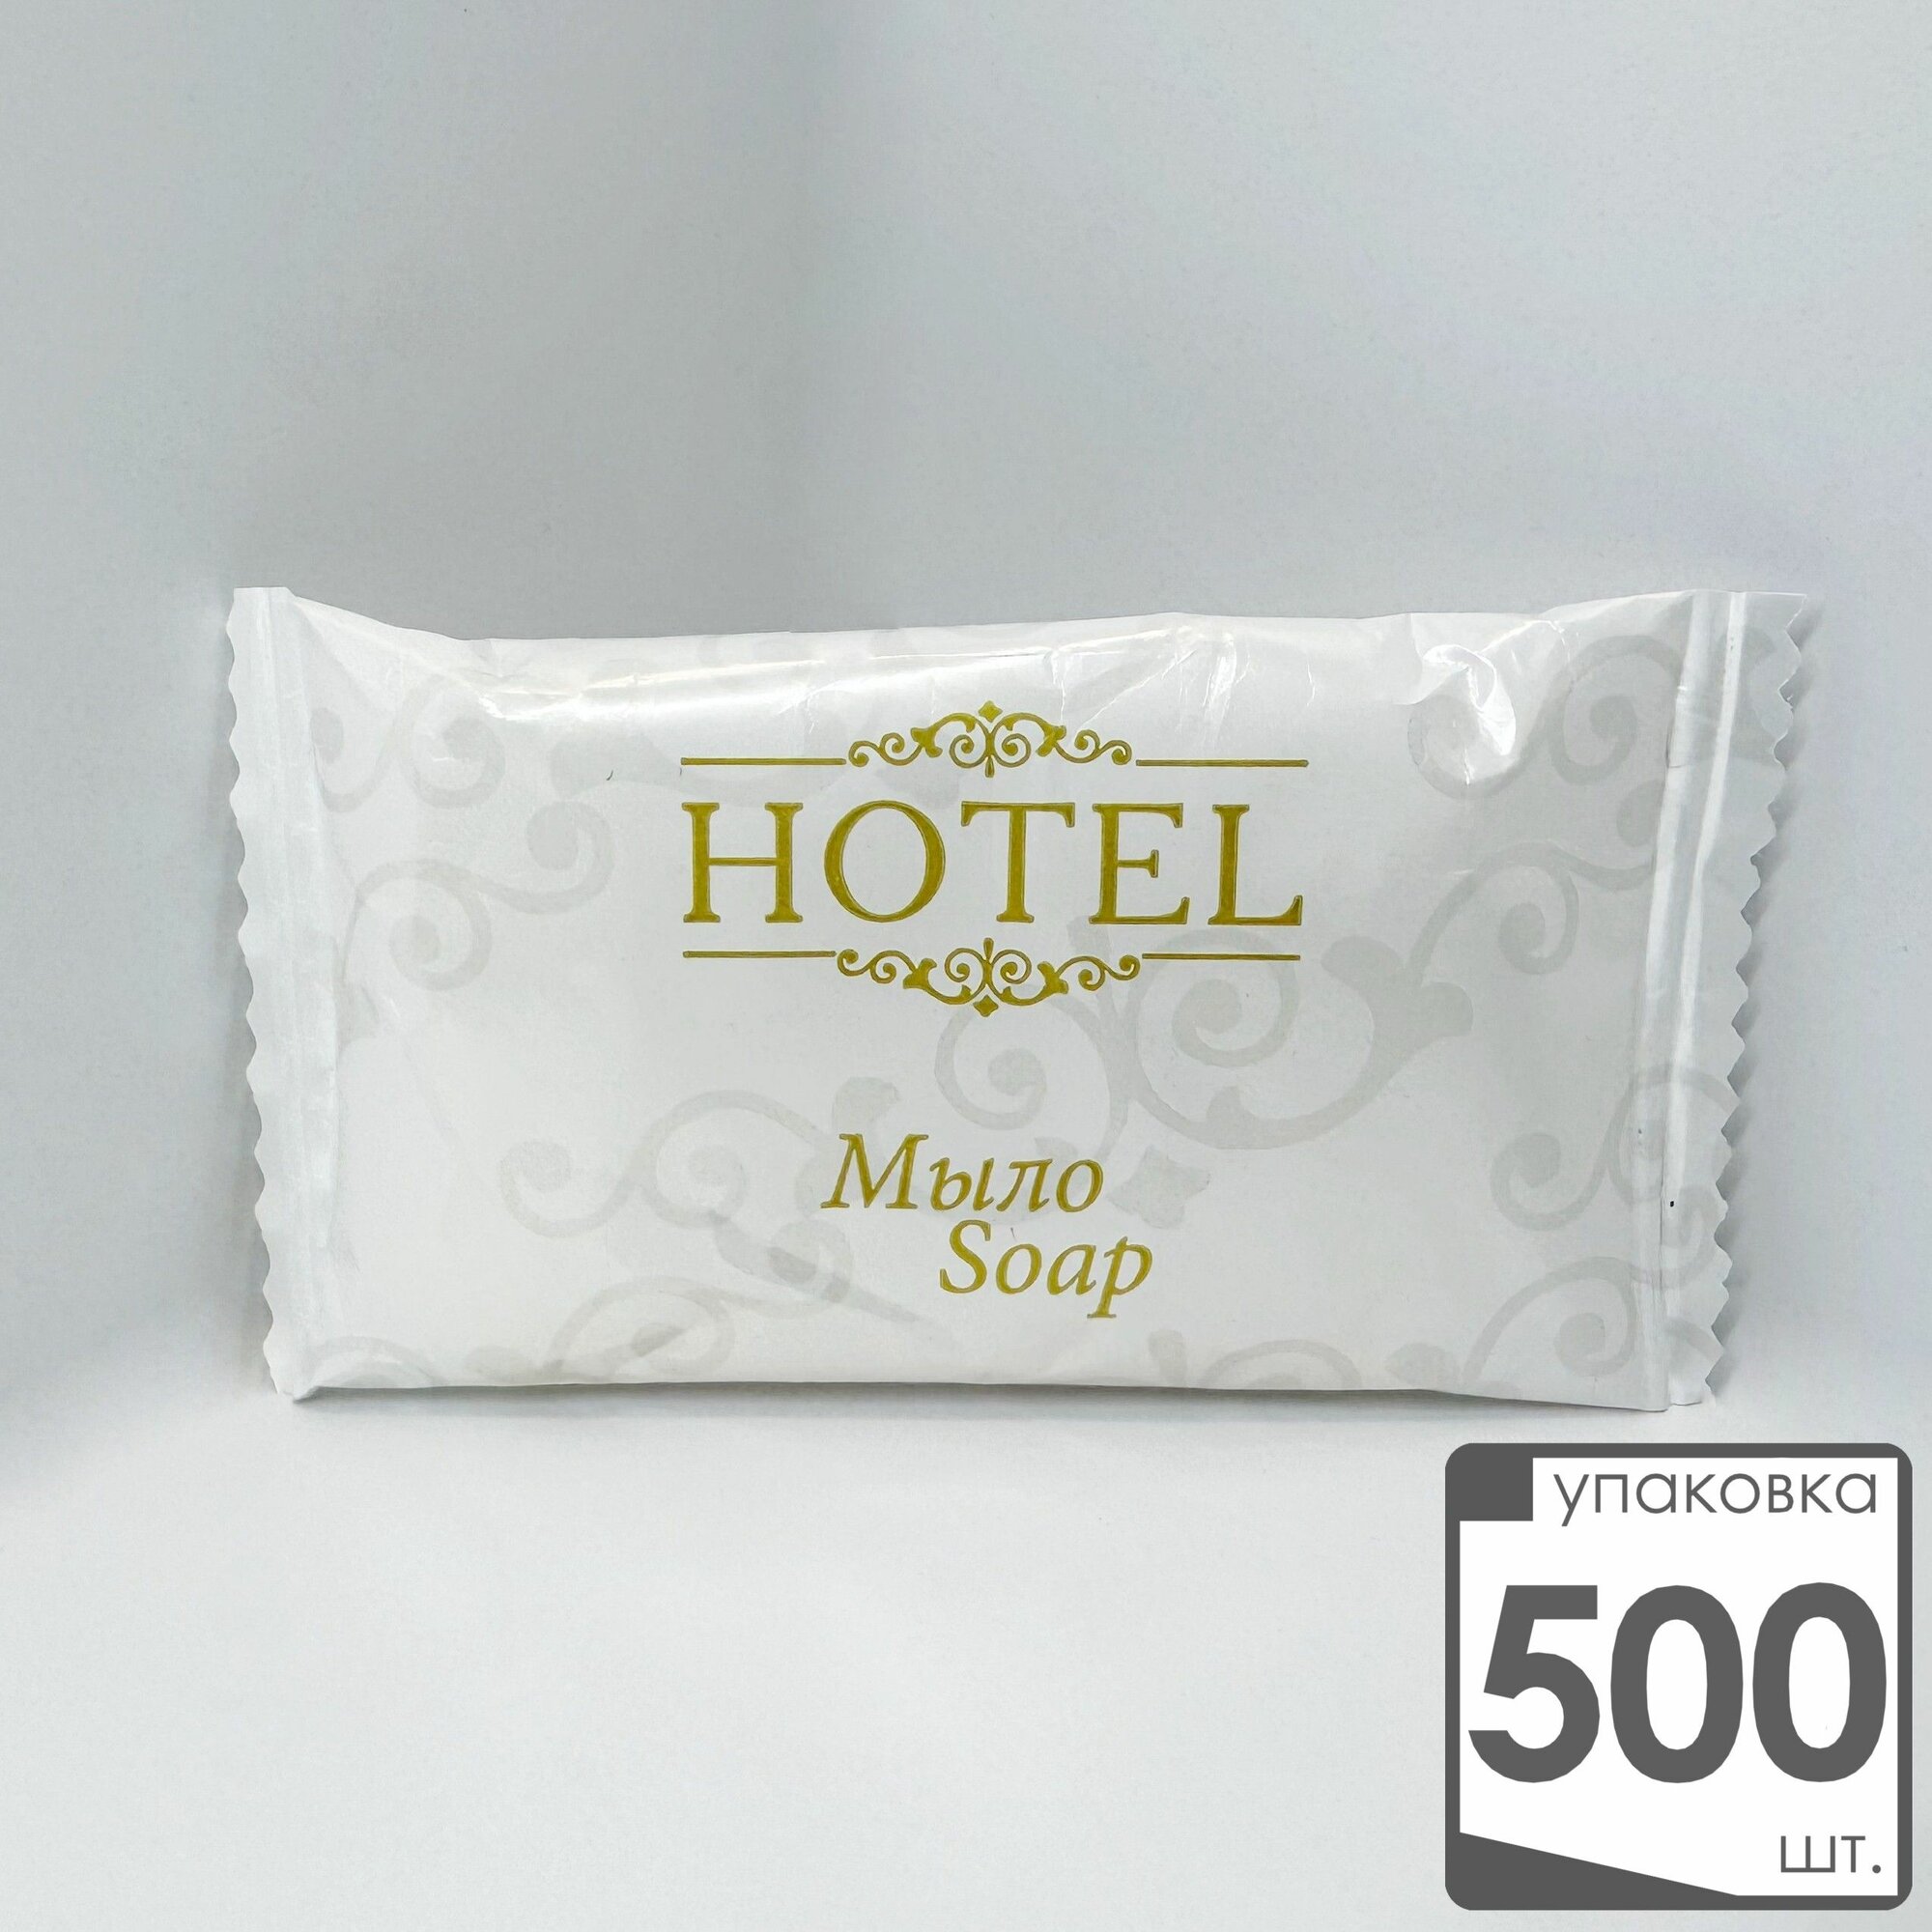 Мыло кусковое одноразовое в упаковке 500 флоу-пак 13 гр. 500 шт. HOTEL для гостиниц и отелей